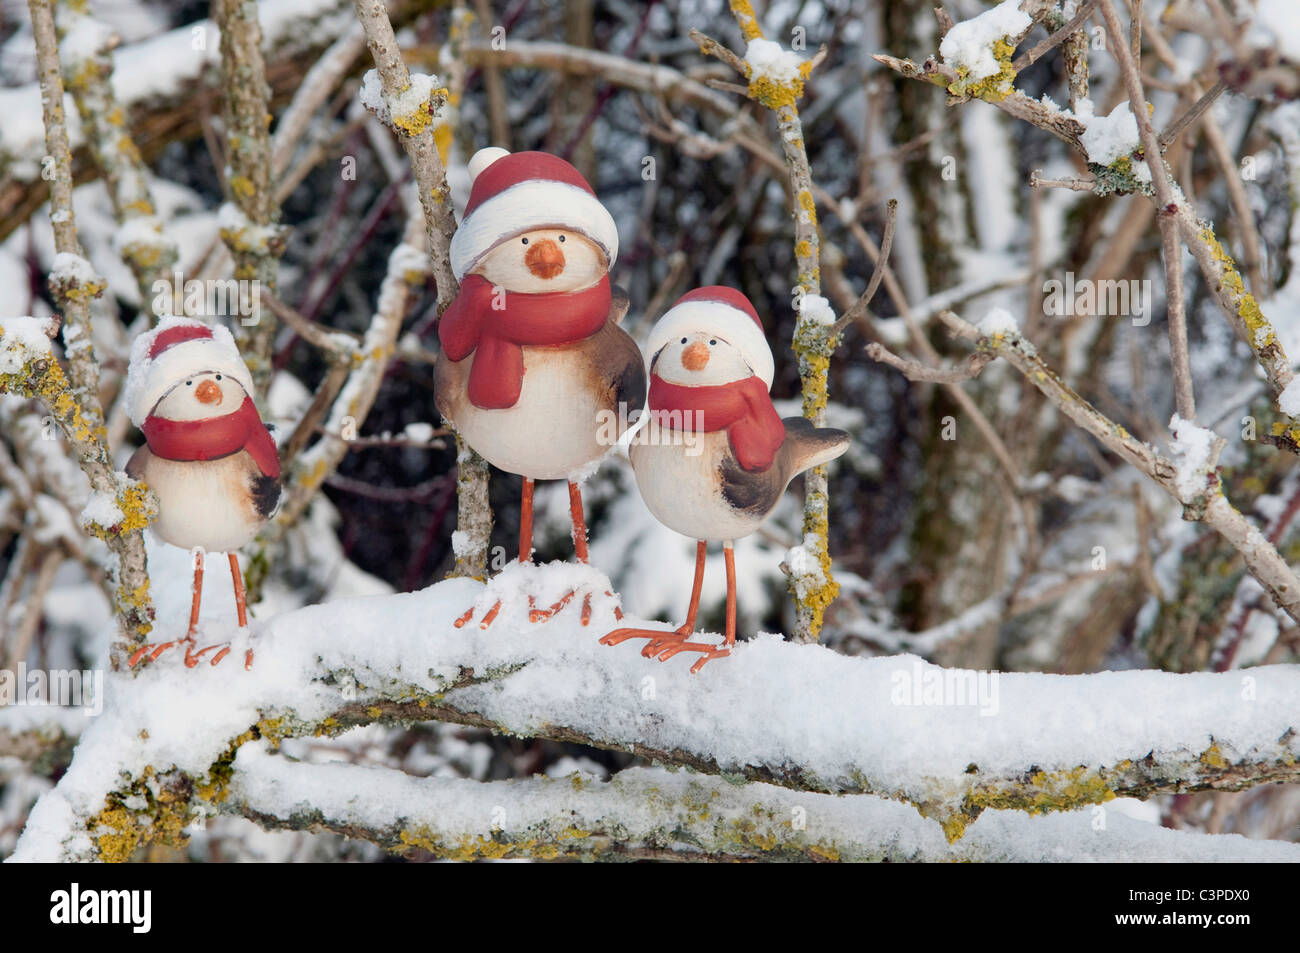 Les canards d'argile avec santa hat sur la neige couverts, la direction générale de l'hiver. Banque D'Images